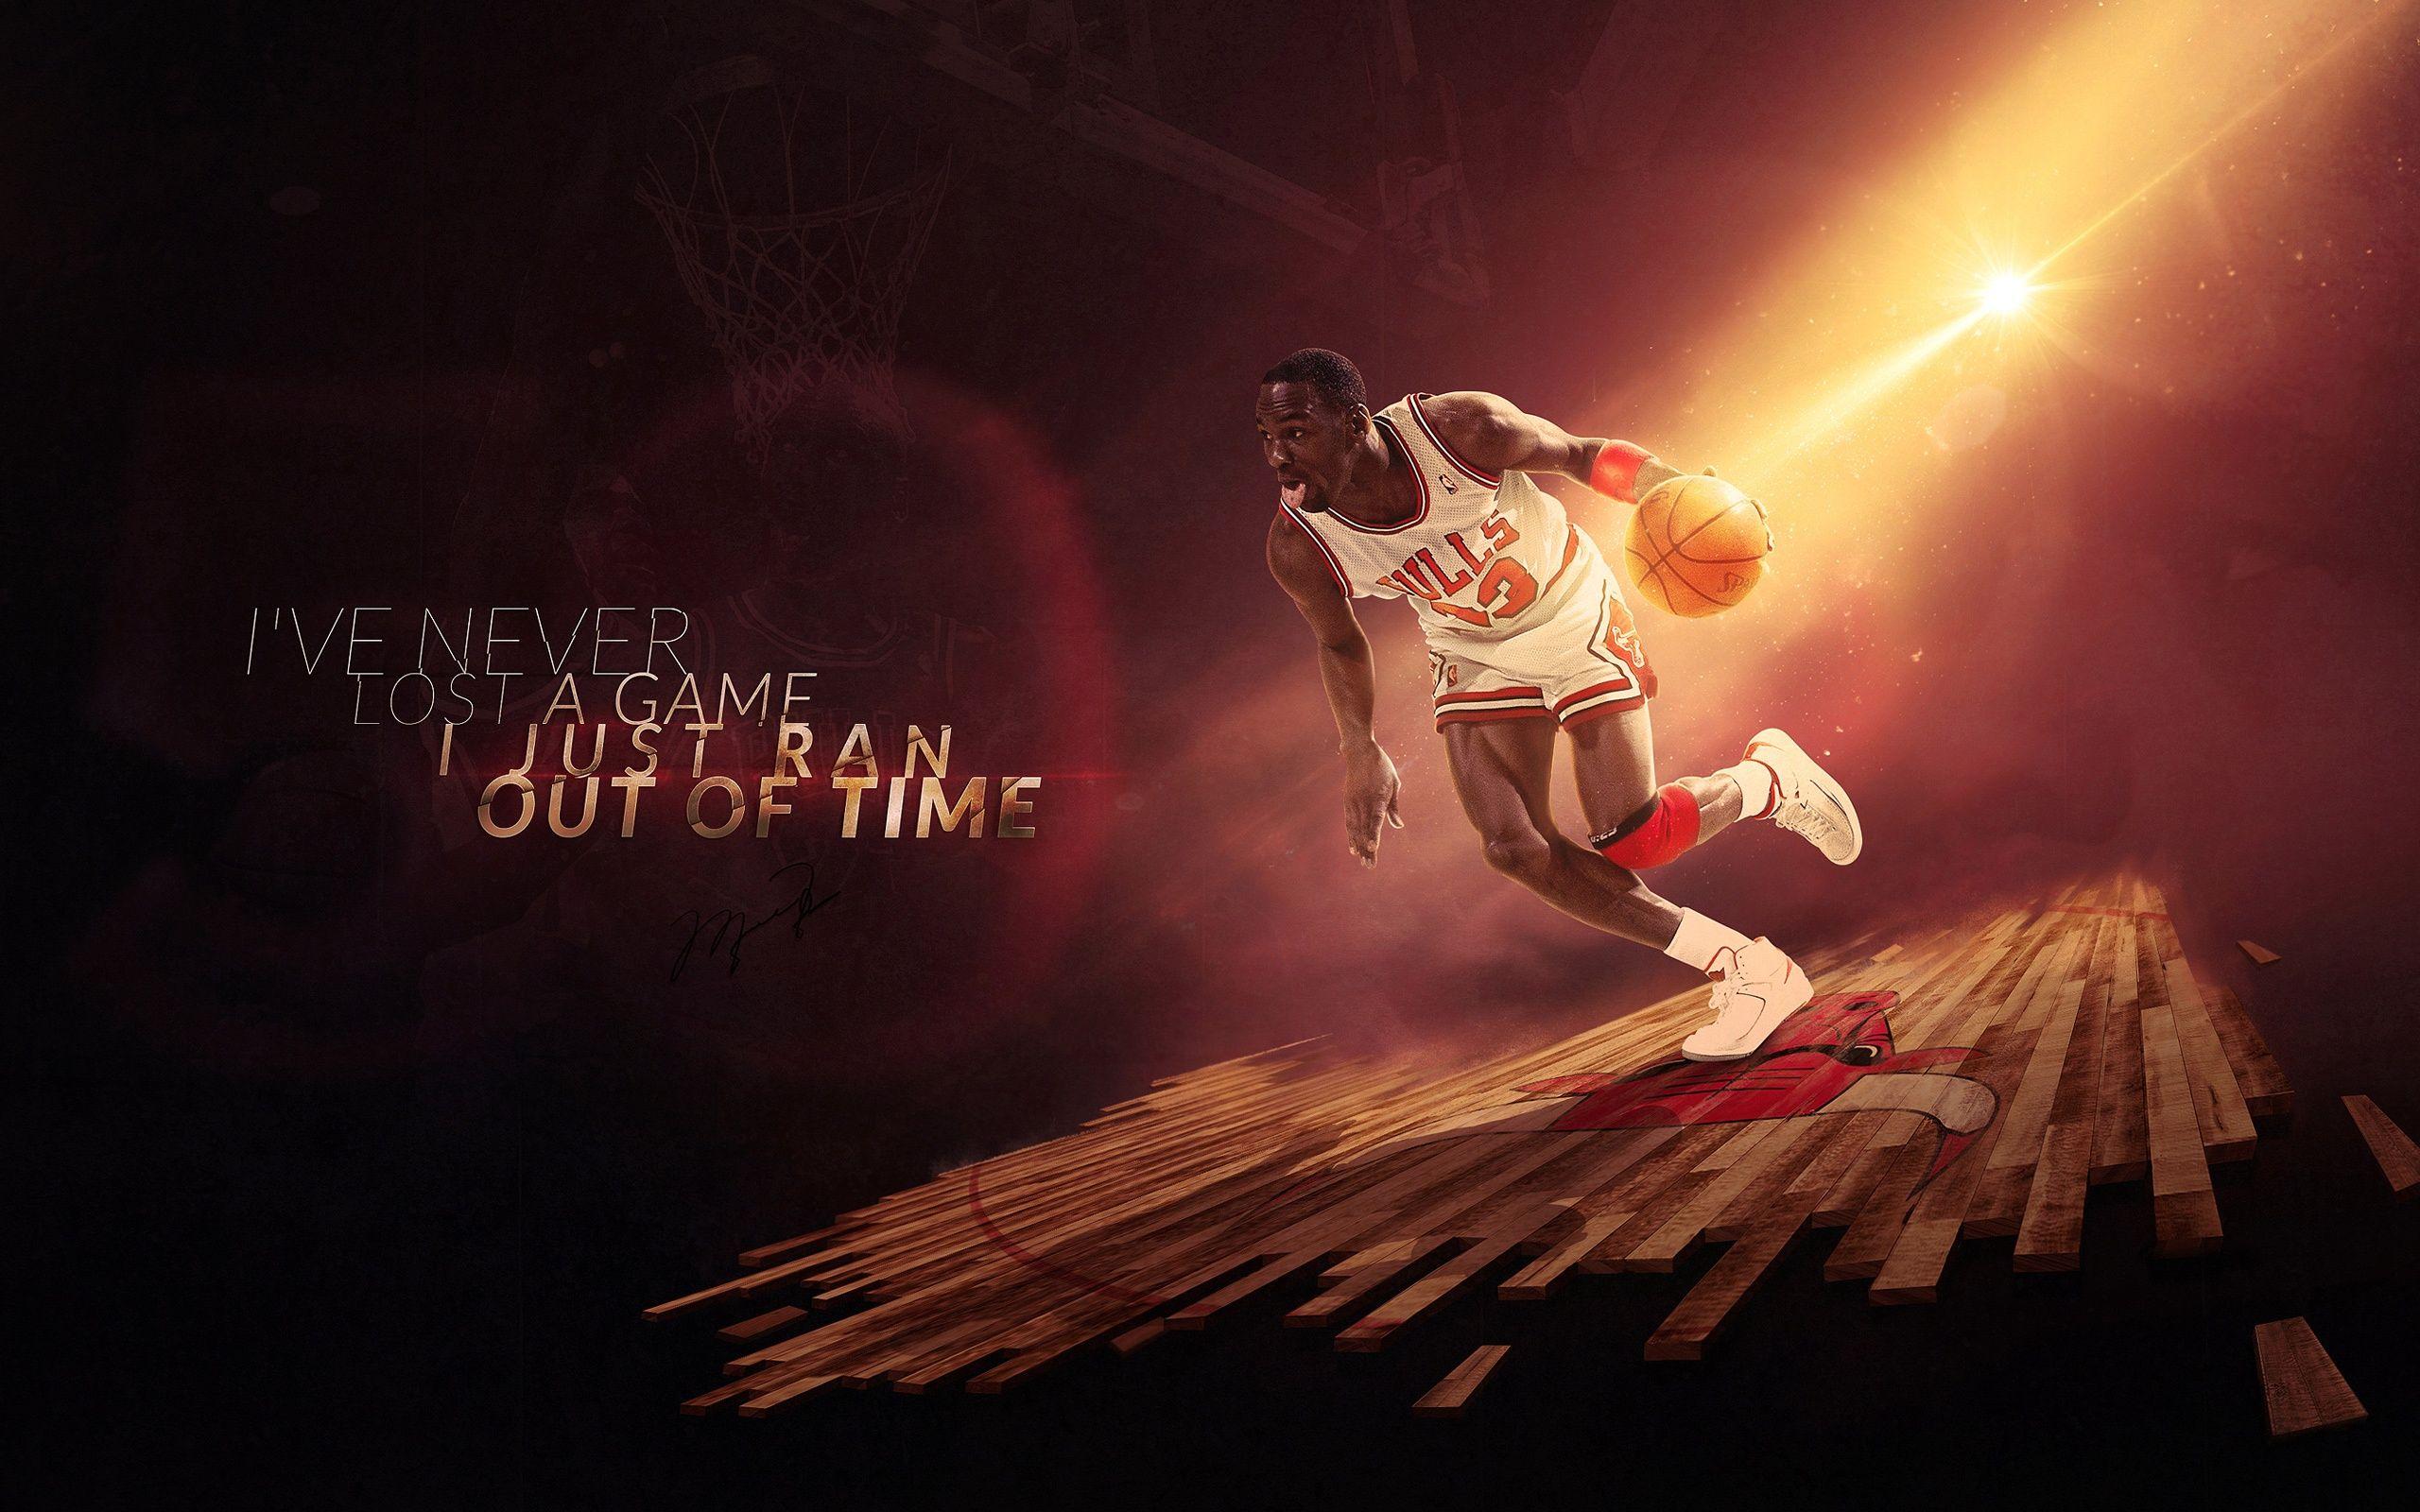 Michael Jordan Chicago Bulls Wallpaper in jpg format for free download